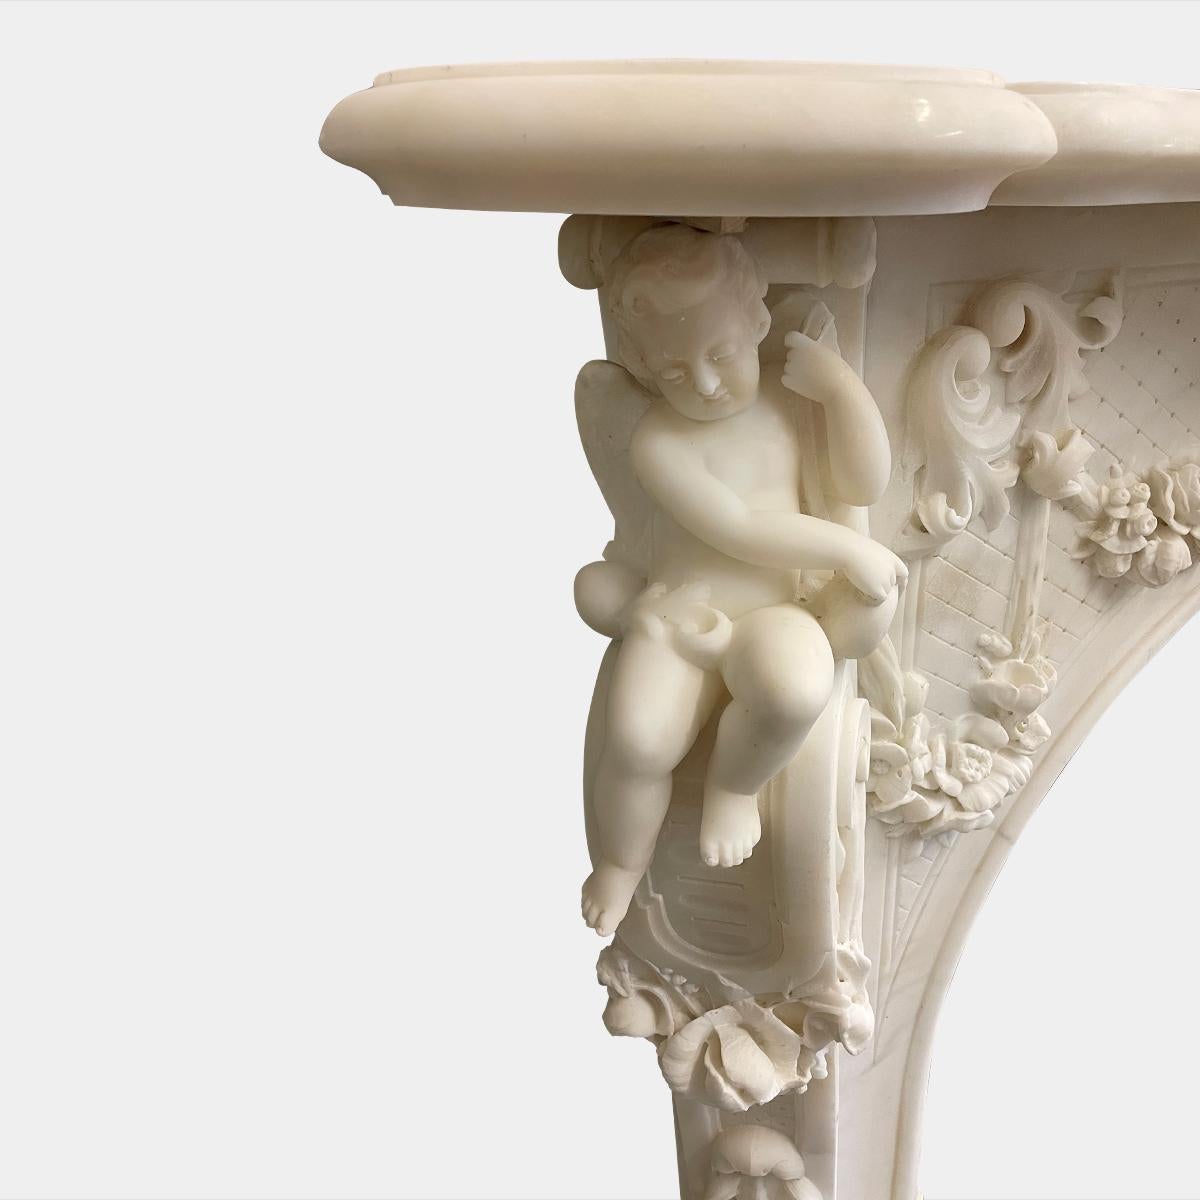 Ein großer italienischer Kamin im Barockstil aus der Mitte des 19. Jahrhunderts, ausgeführt in statuarischem weißem Marmor. Jedes Element dieser Einfassung ist dekadent aus massiven Marmorstücken geschnitzt. Die Pfosten mit Konsolen in Form von